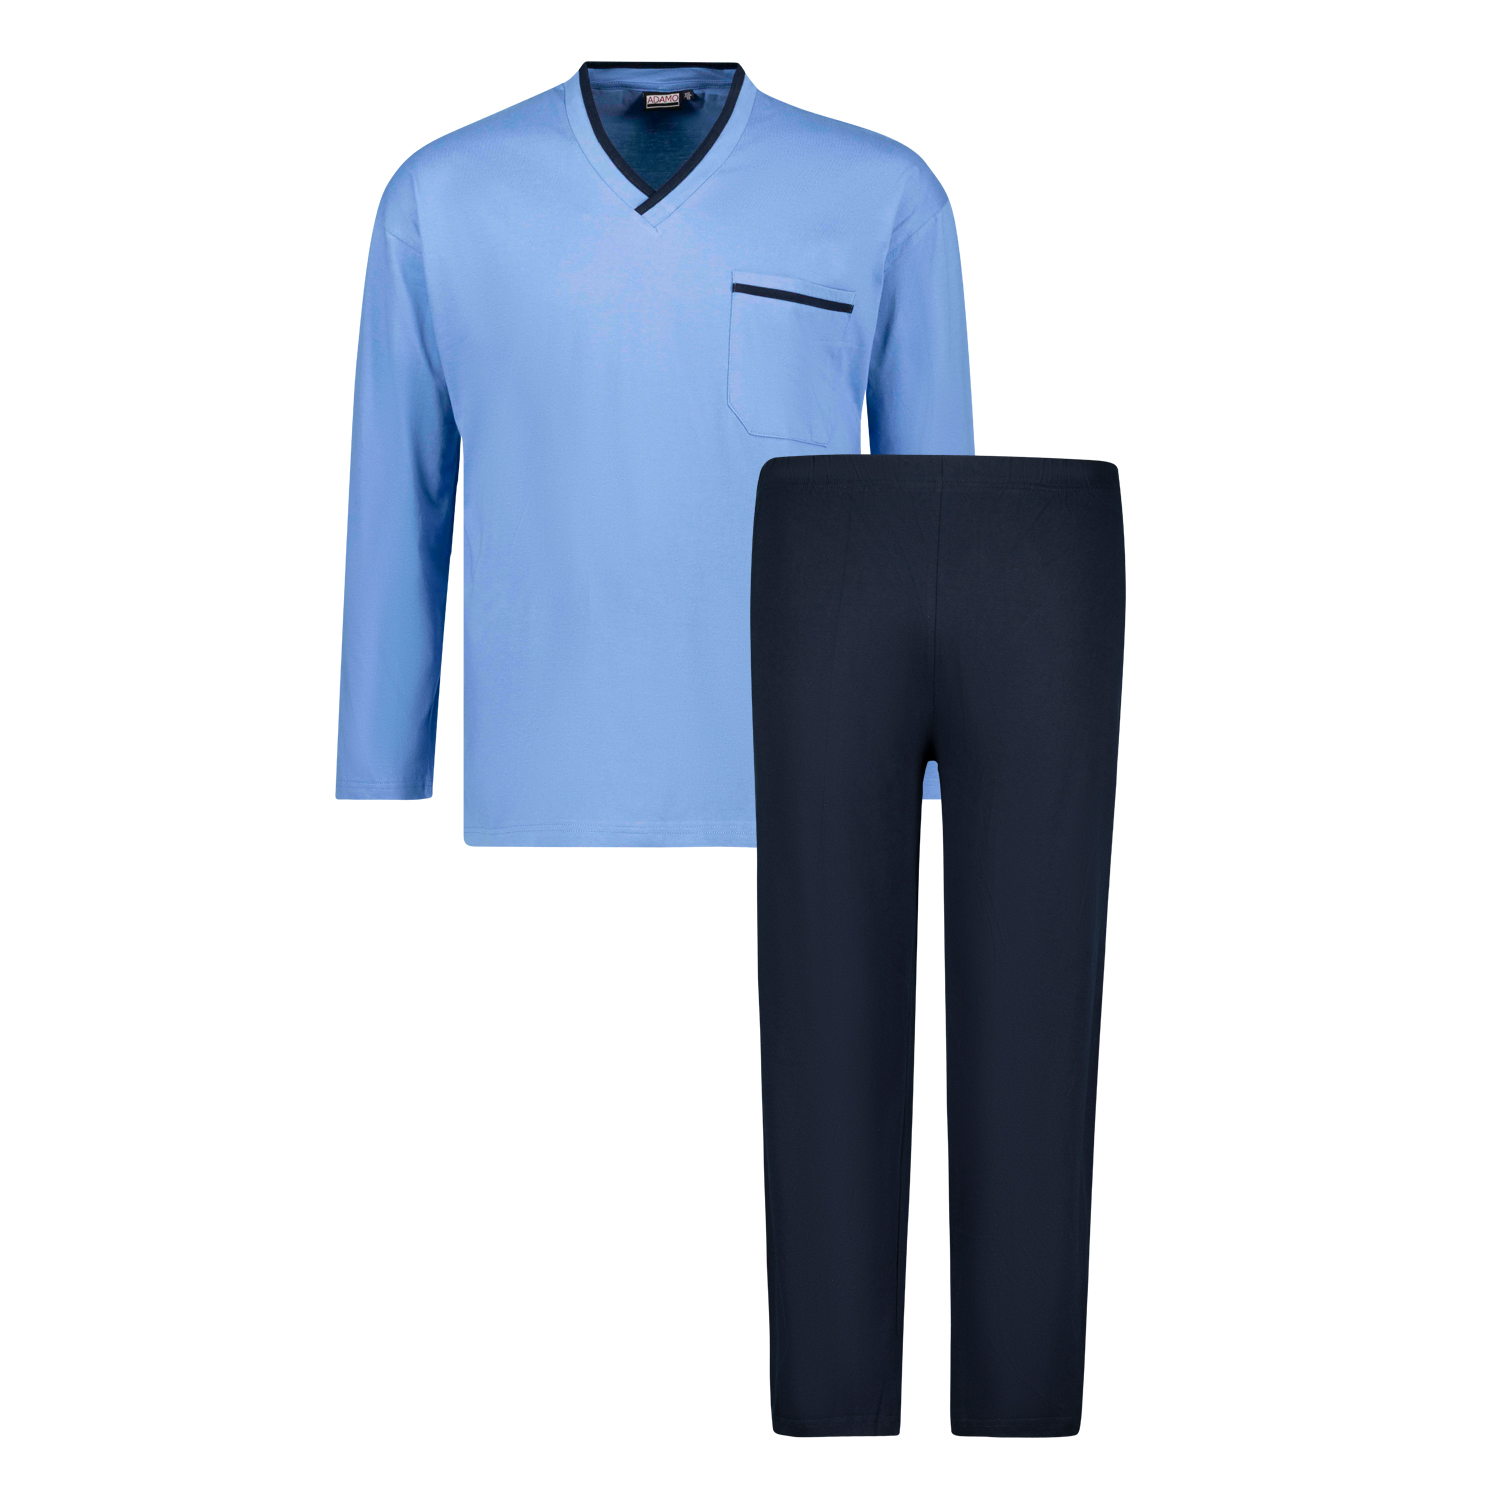 Langer Herren Schlafanzug in hellblau von Adamo in Übergrößen bis 10XL und in Langgrößen bis 122